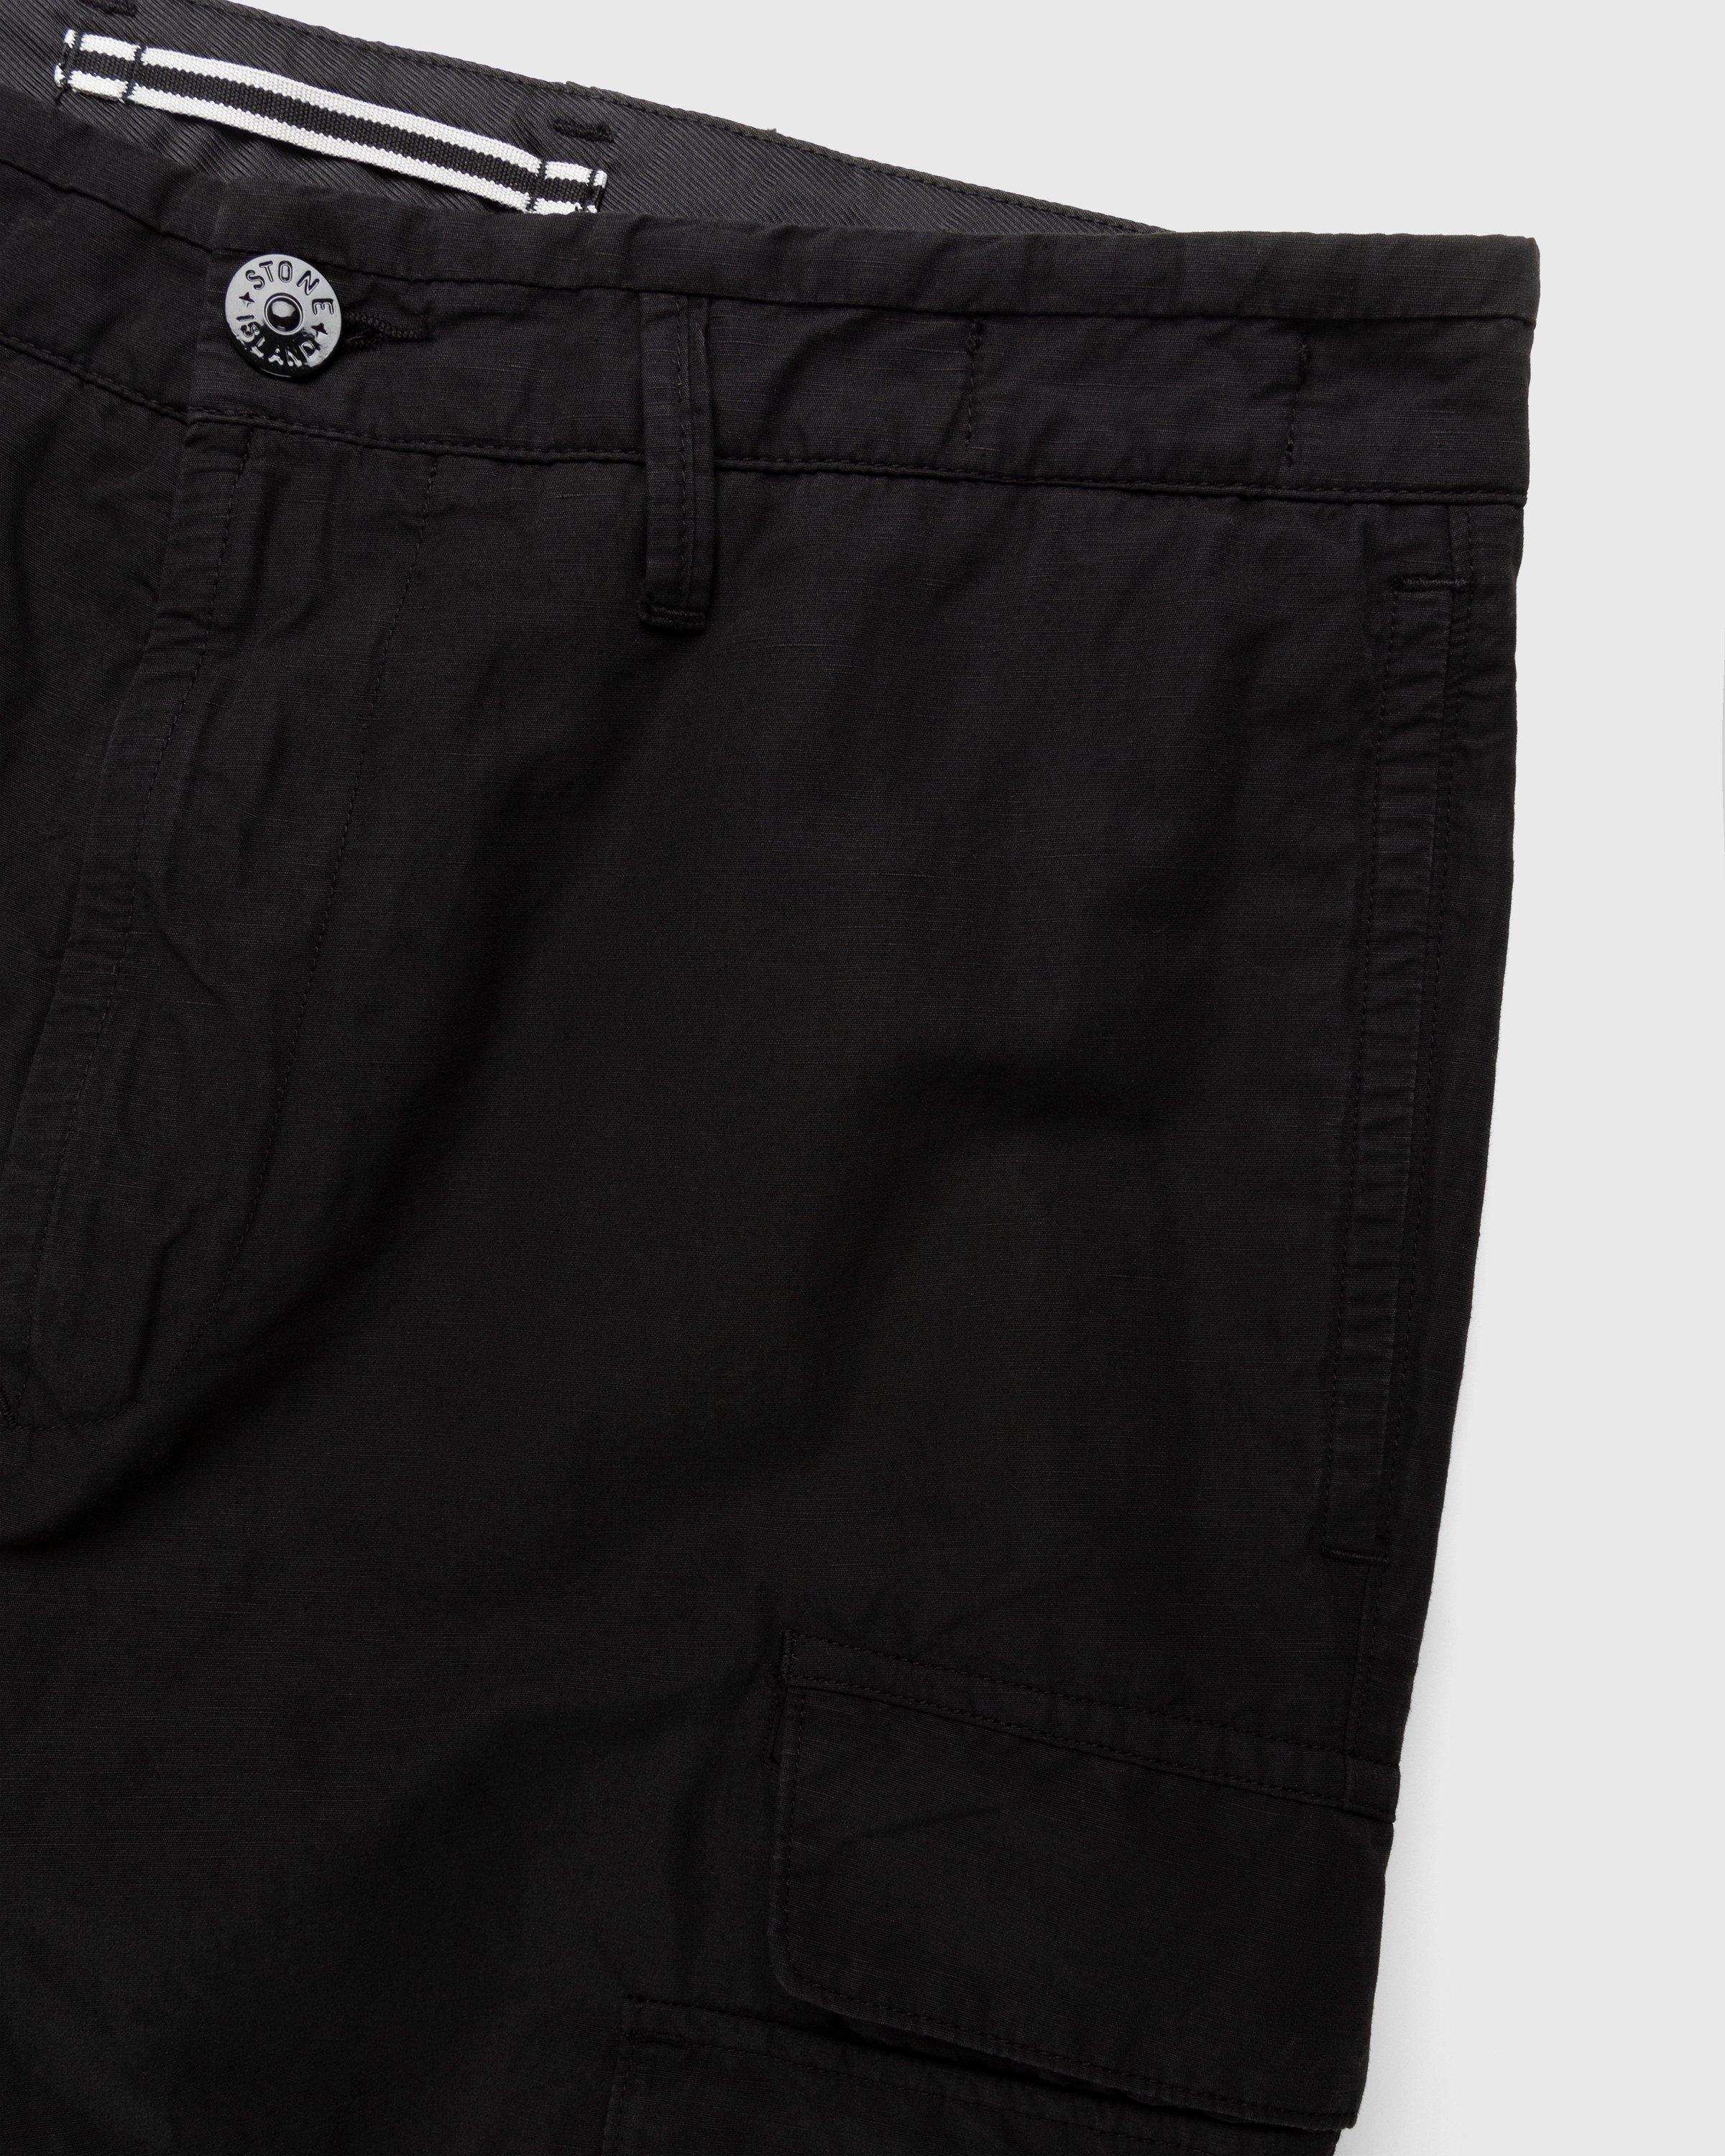 Stone Island - 31706 Garment-Dyed Cargo Pants Black - Clothing - Black - Image 3